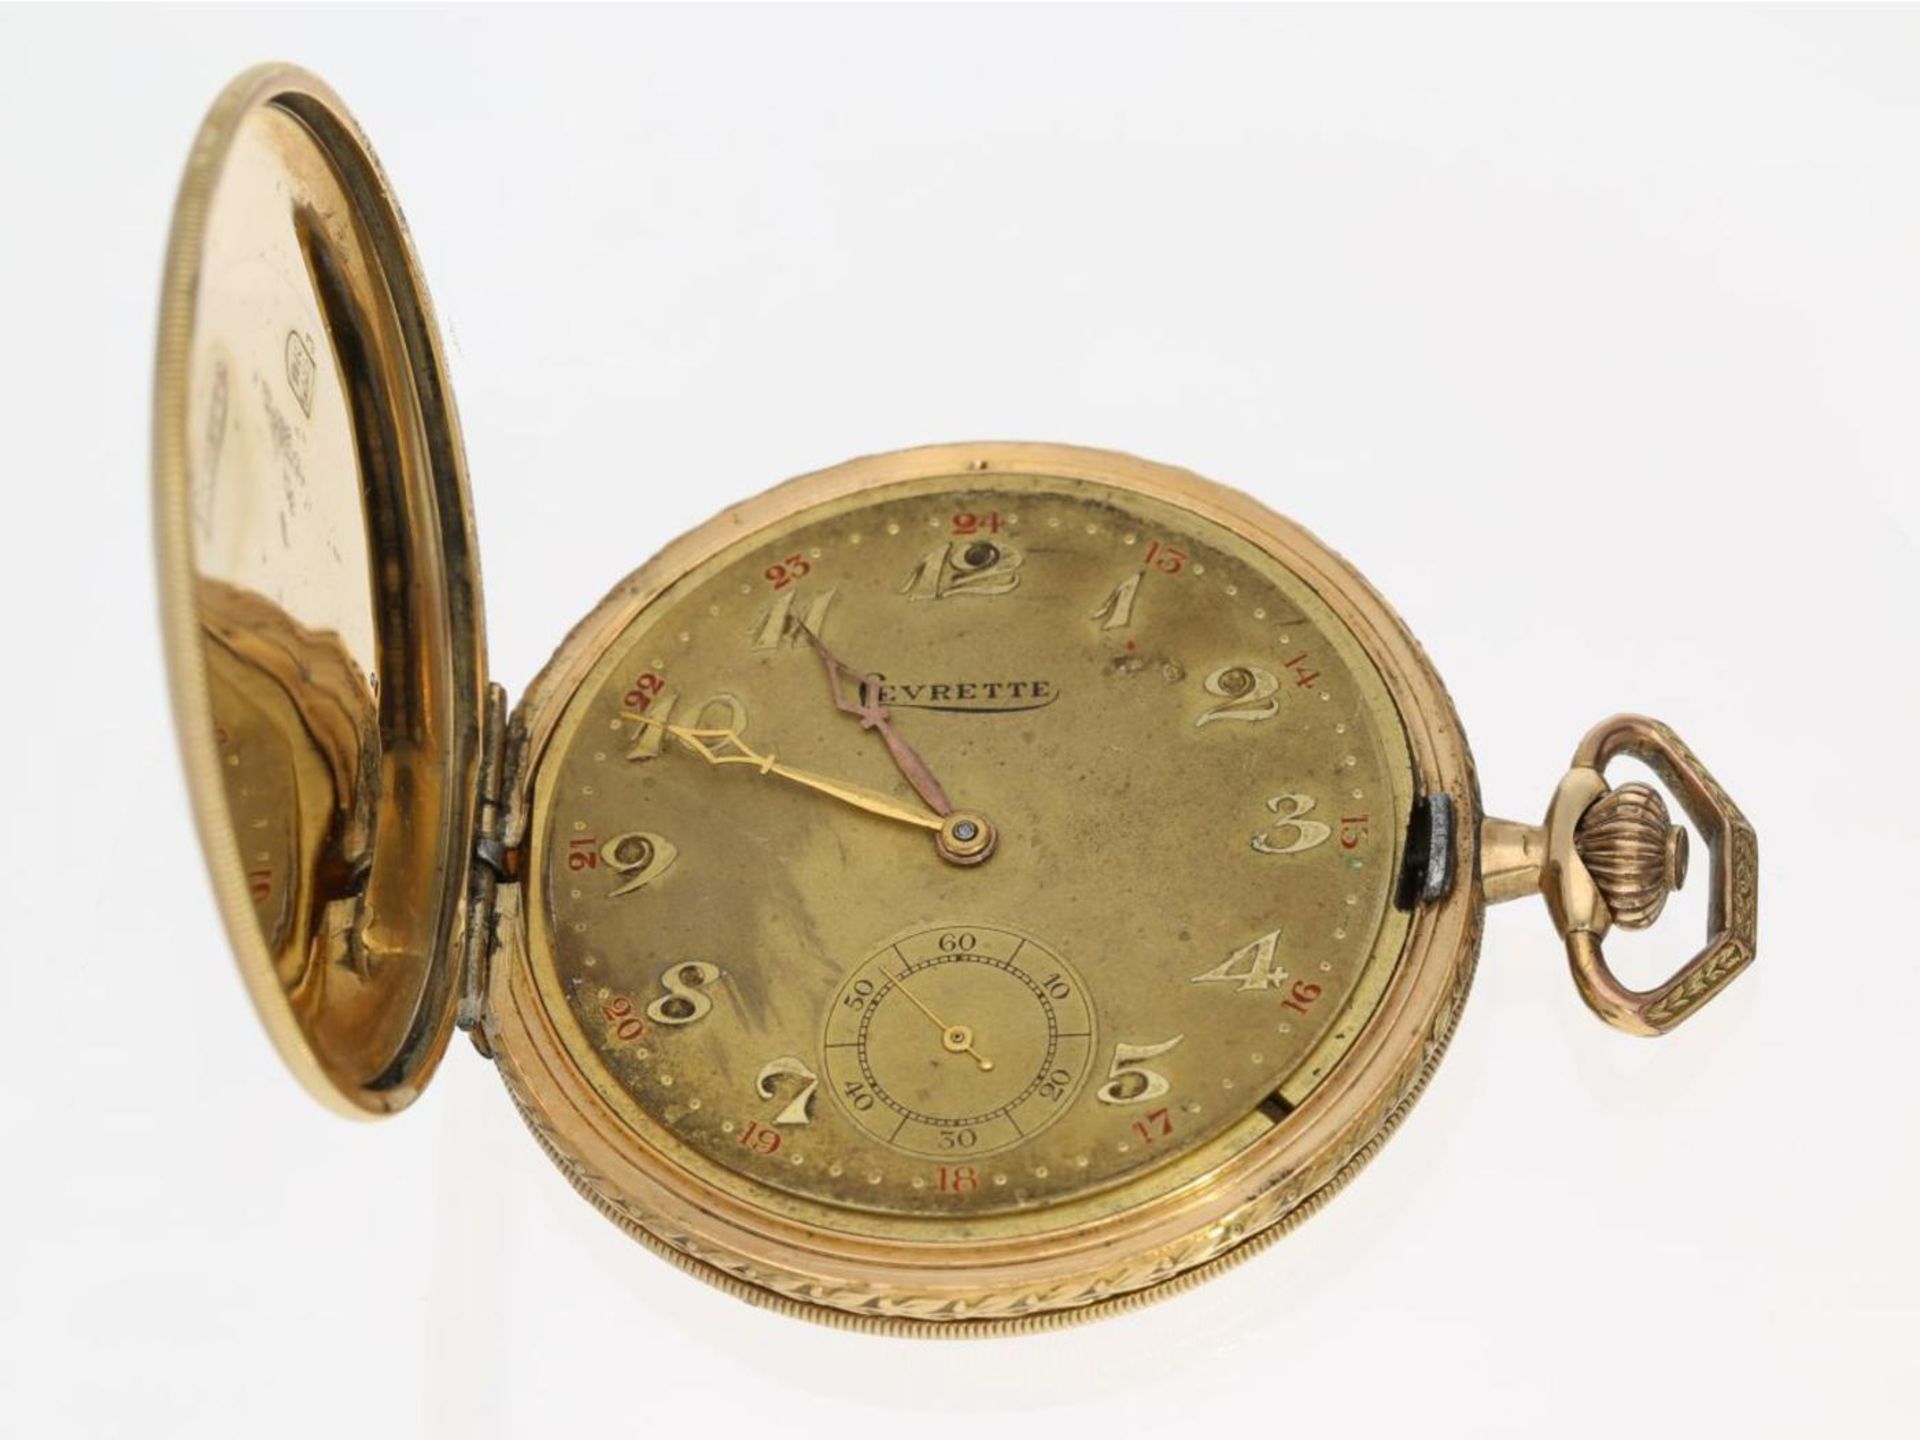 Taschenuhr: dekorative Art déco Goldsavonnette, Chronometre Levrette, 1930er Jahre Ca. Ø51mm, ca.